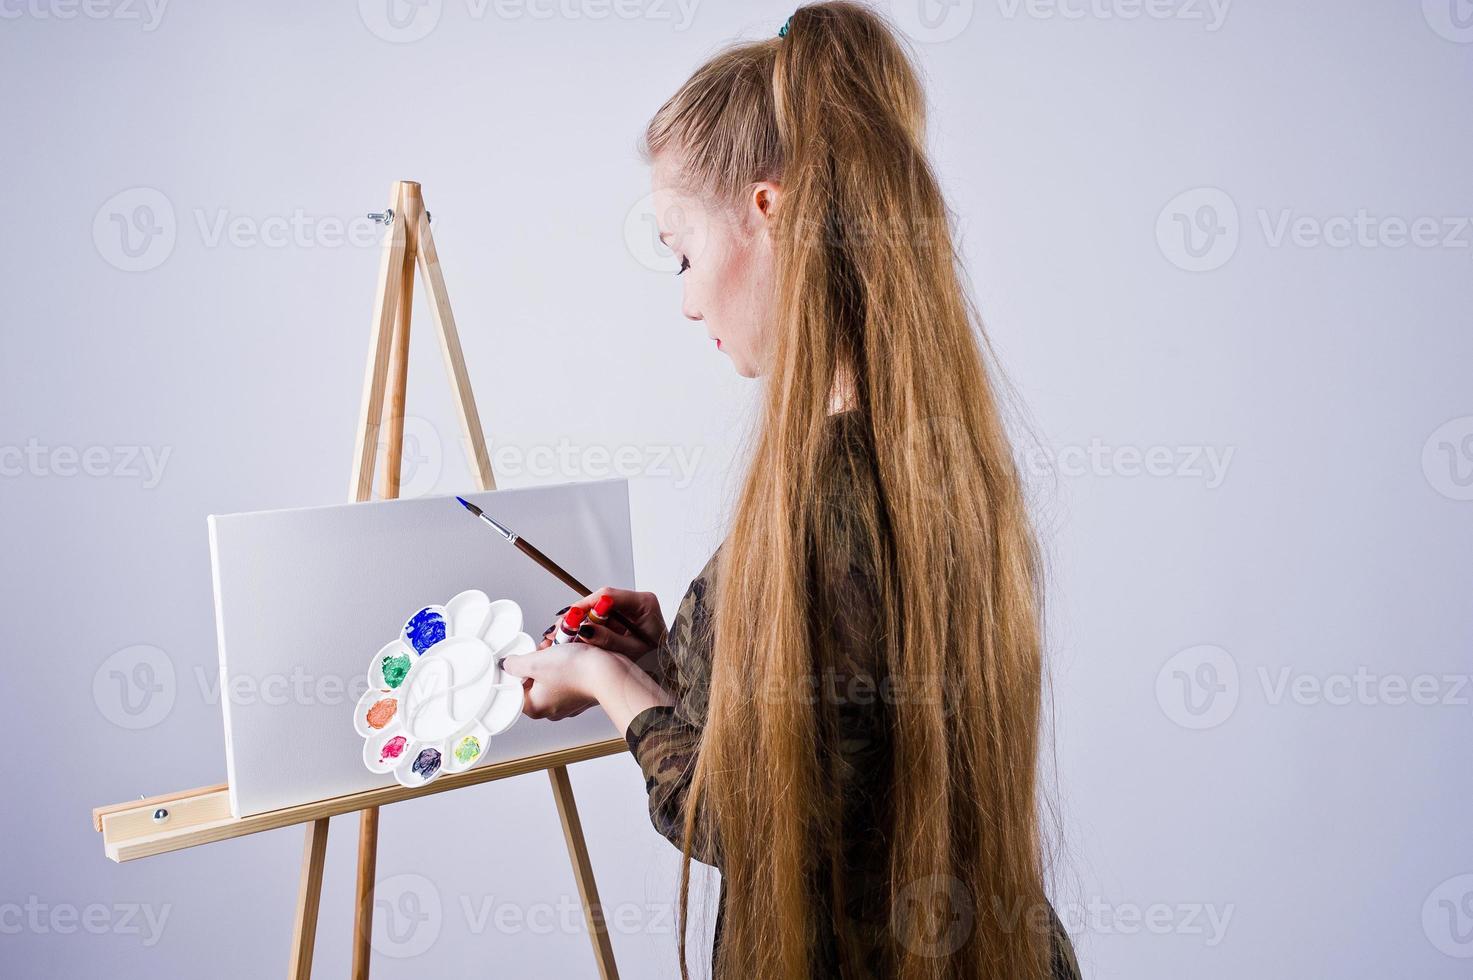 vacker kvinna konstnär målare med penslar och oljeduk poserar i studio isolerad på vitt. foto